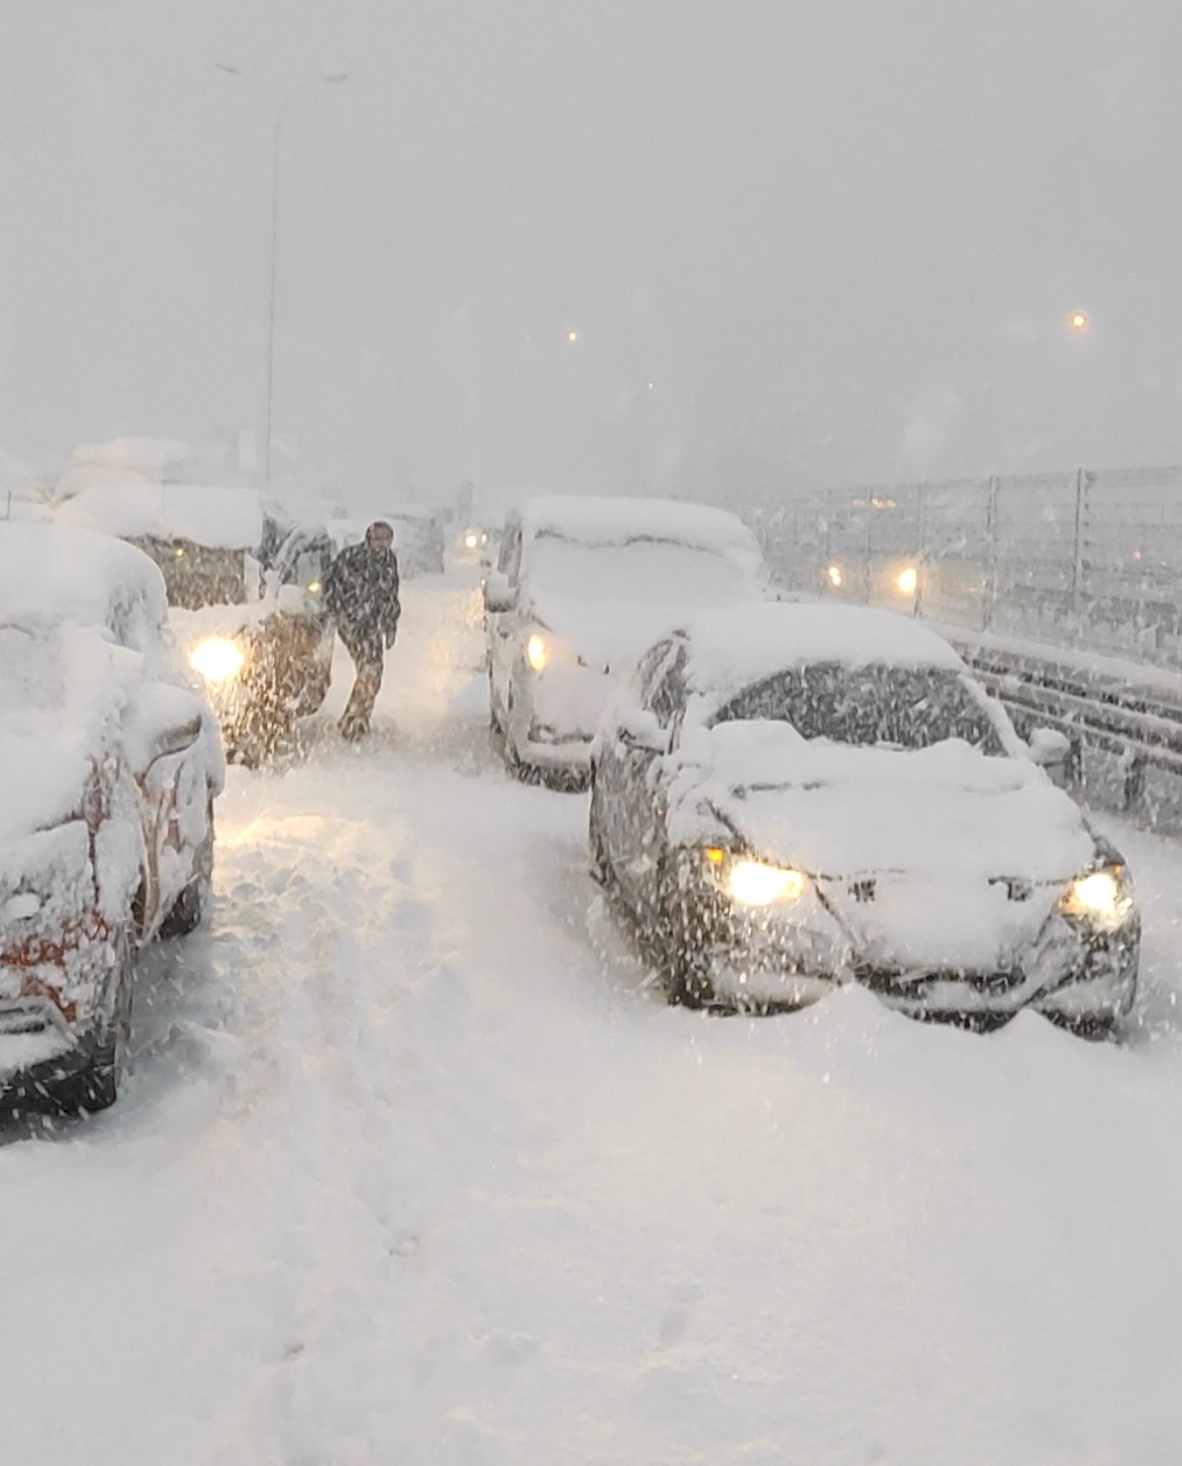 Los autos varados están cubiertos de nieve luego de una fuerte nevada en Estambul, Turquía (Okan Tanis/via REUTERS )